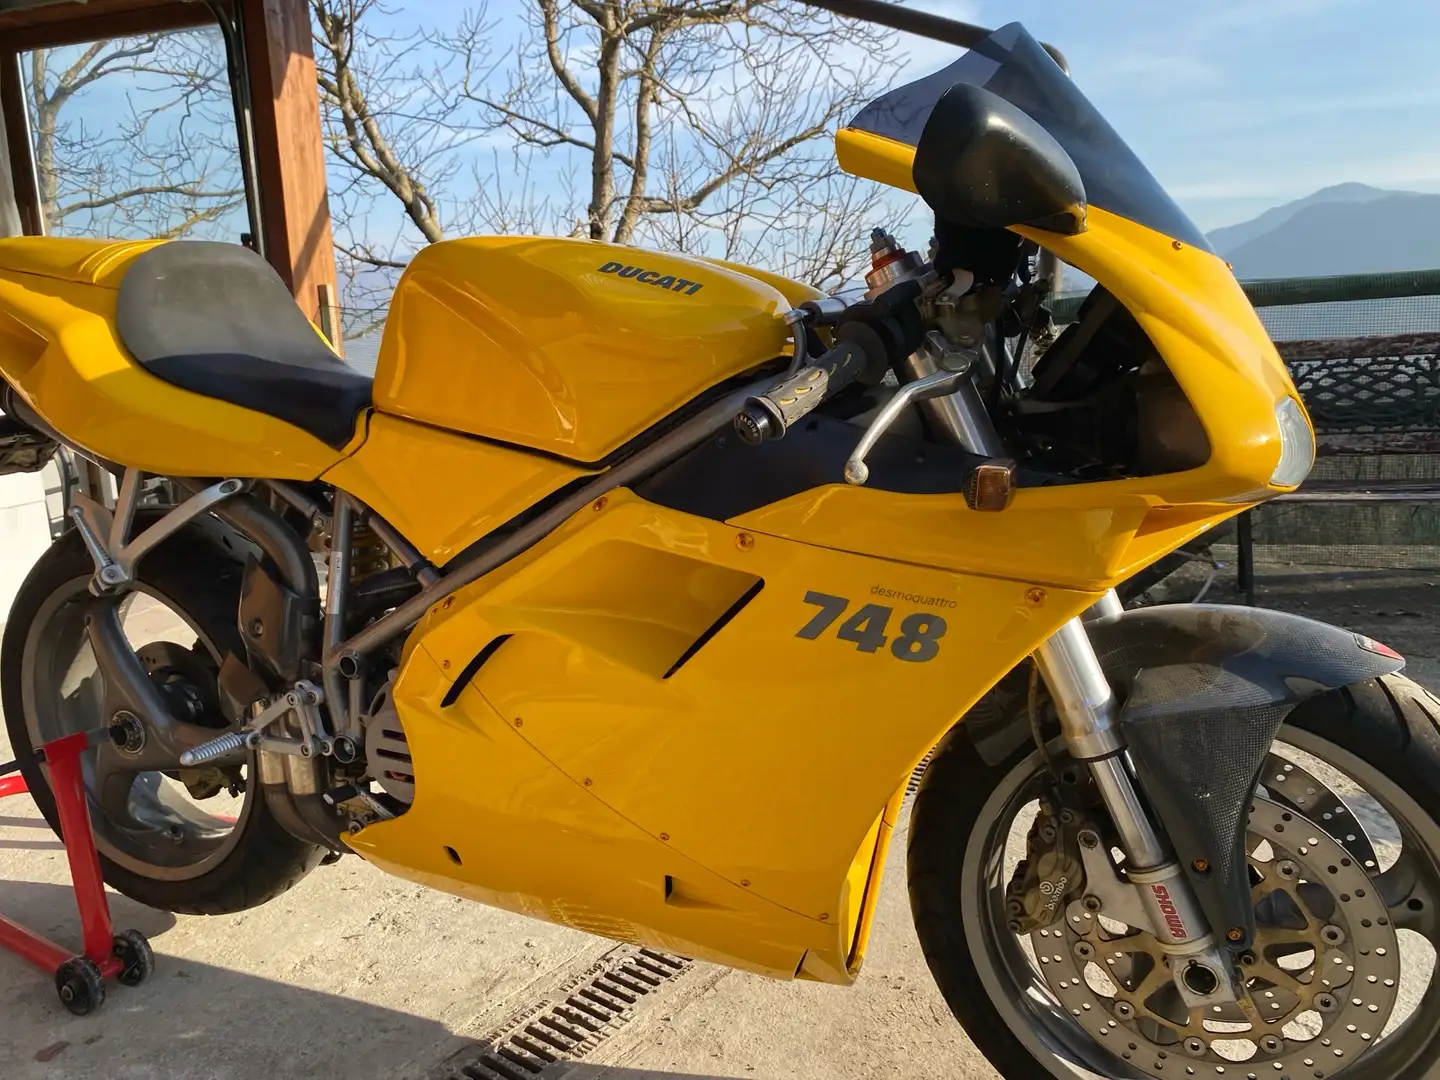 Ducati 748 Yellow - 1